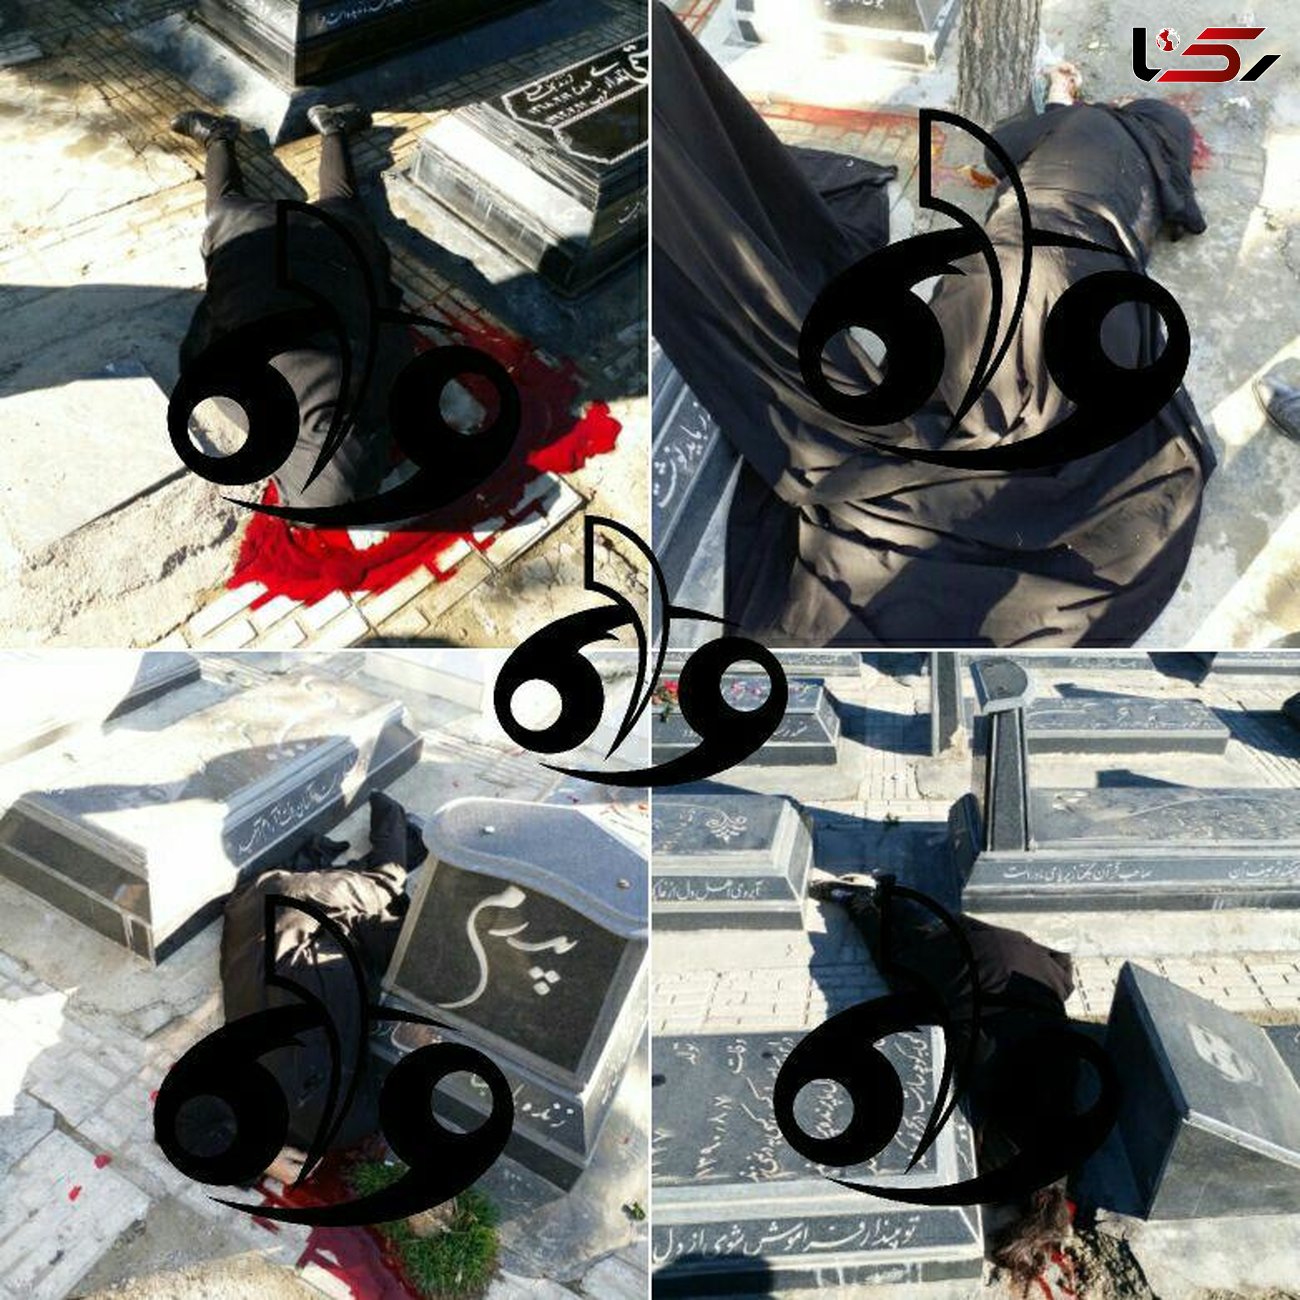 جزئیات قتل عام یک زن و 3 دخترش در باغ فردوس کرمانشاه +عکس